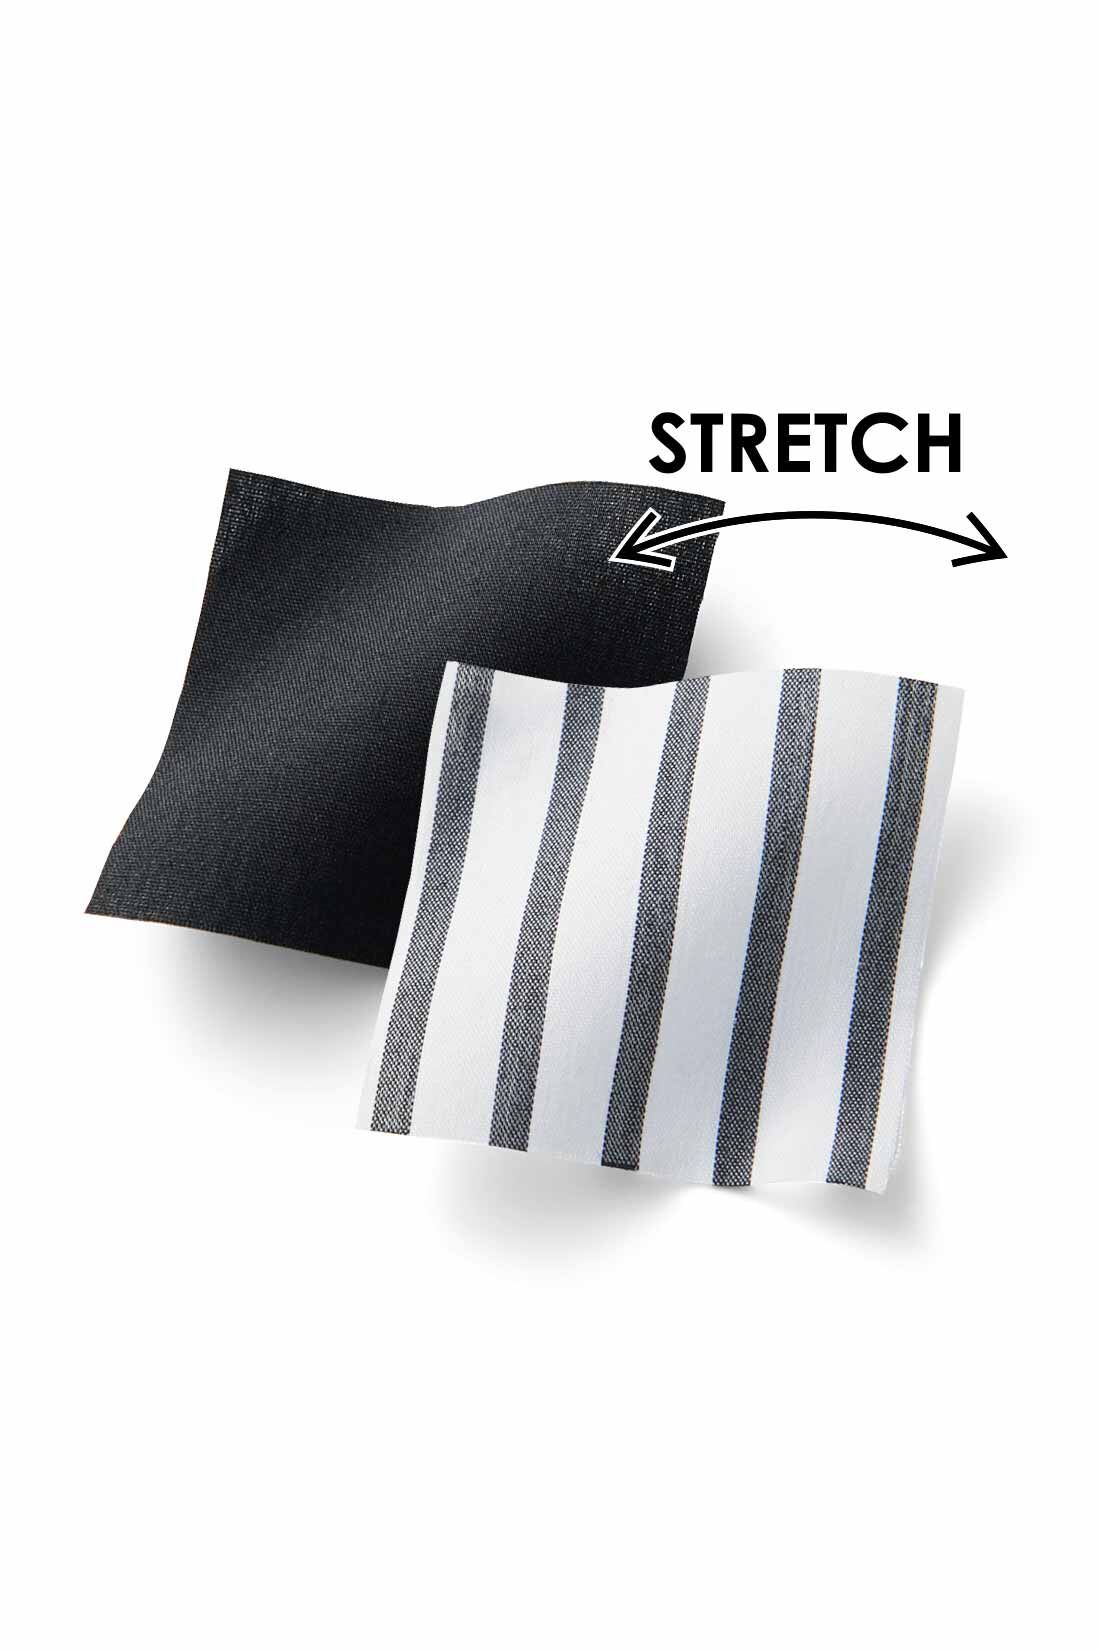 Real Stock|IEDIT[イディット]　シャーリングデザインが着映えする Aラインシャツチュニック〈ブラック〉|ほどよく張りのある、しわが気になりにくいナイロン混素材。